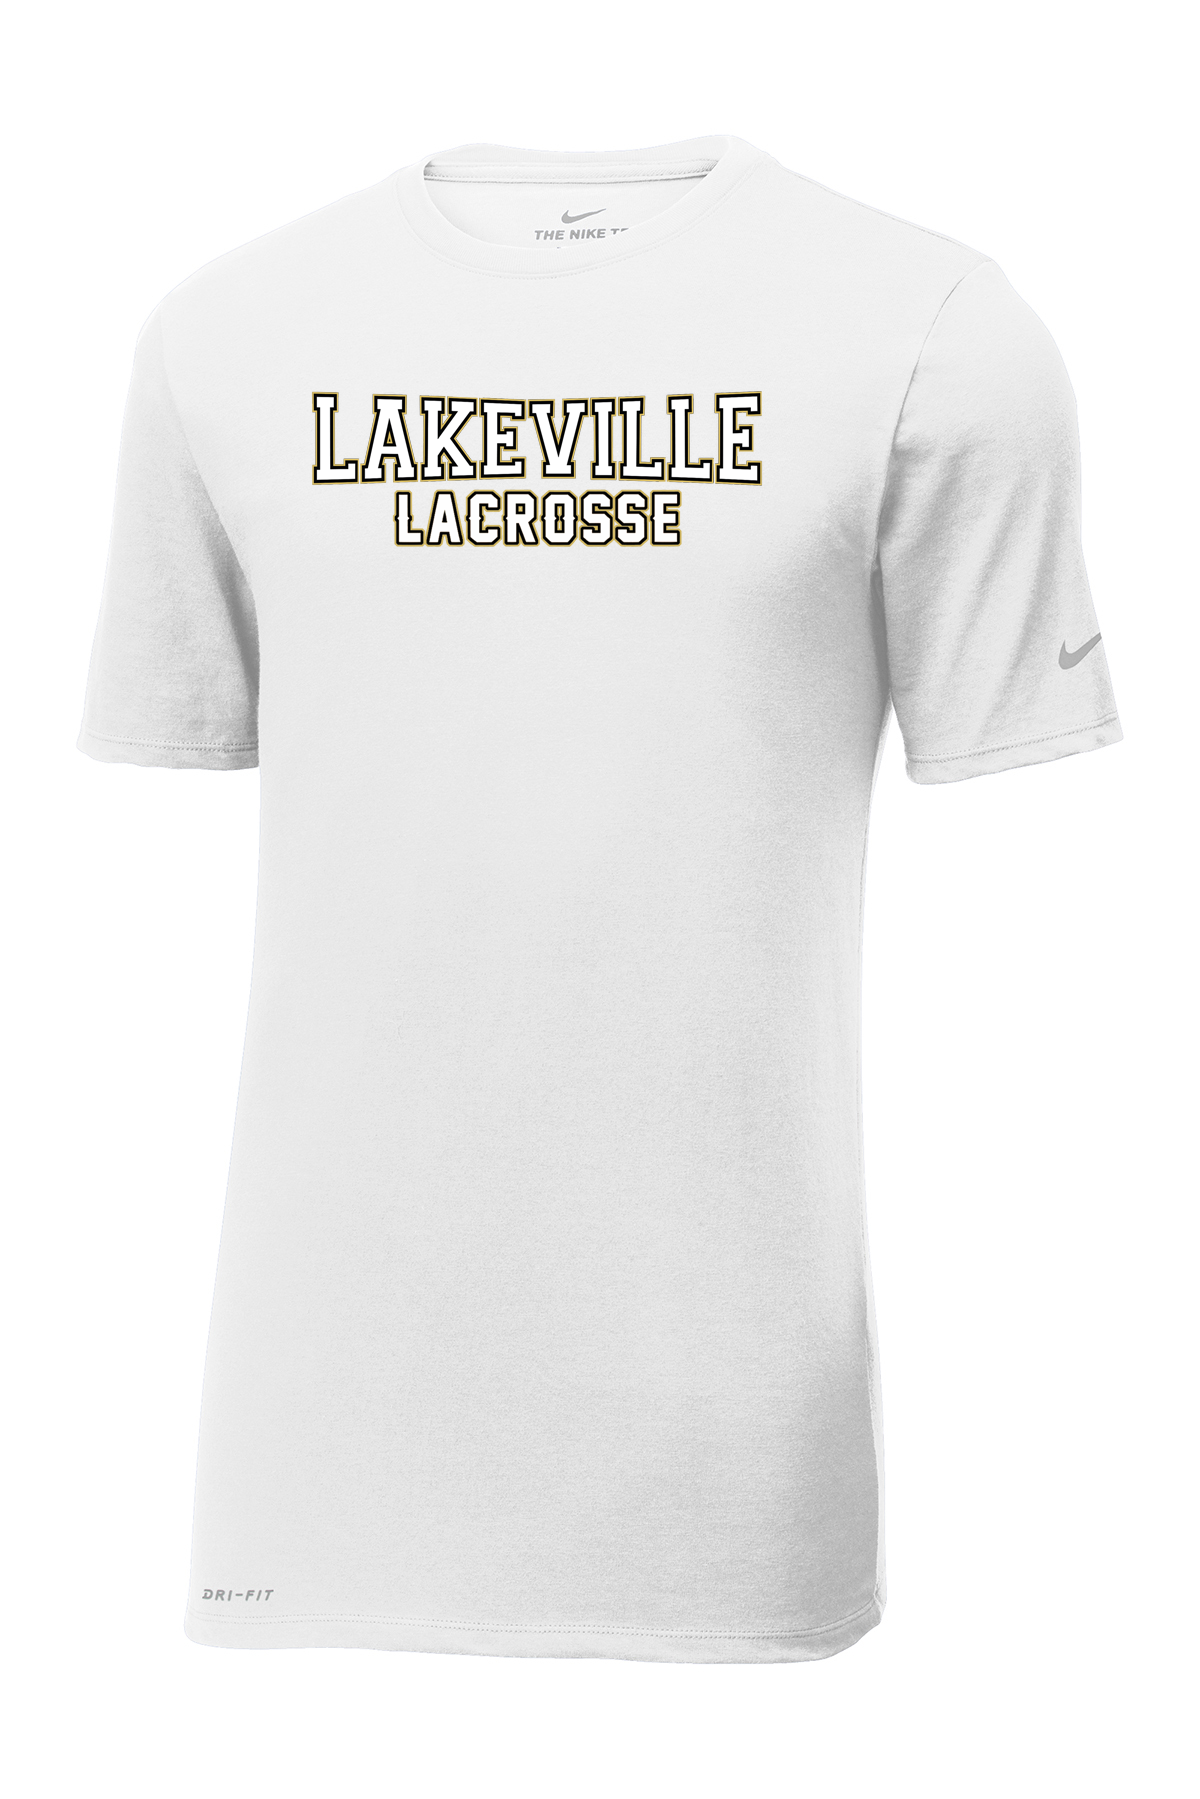 Lakeville Lacrosse Nike Dri-FIT Tee